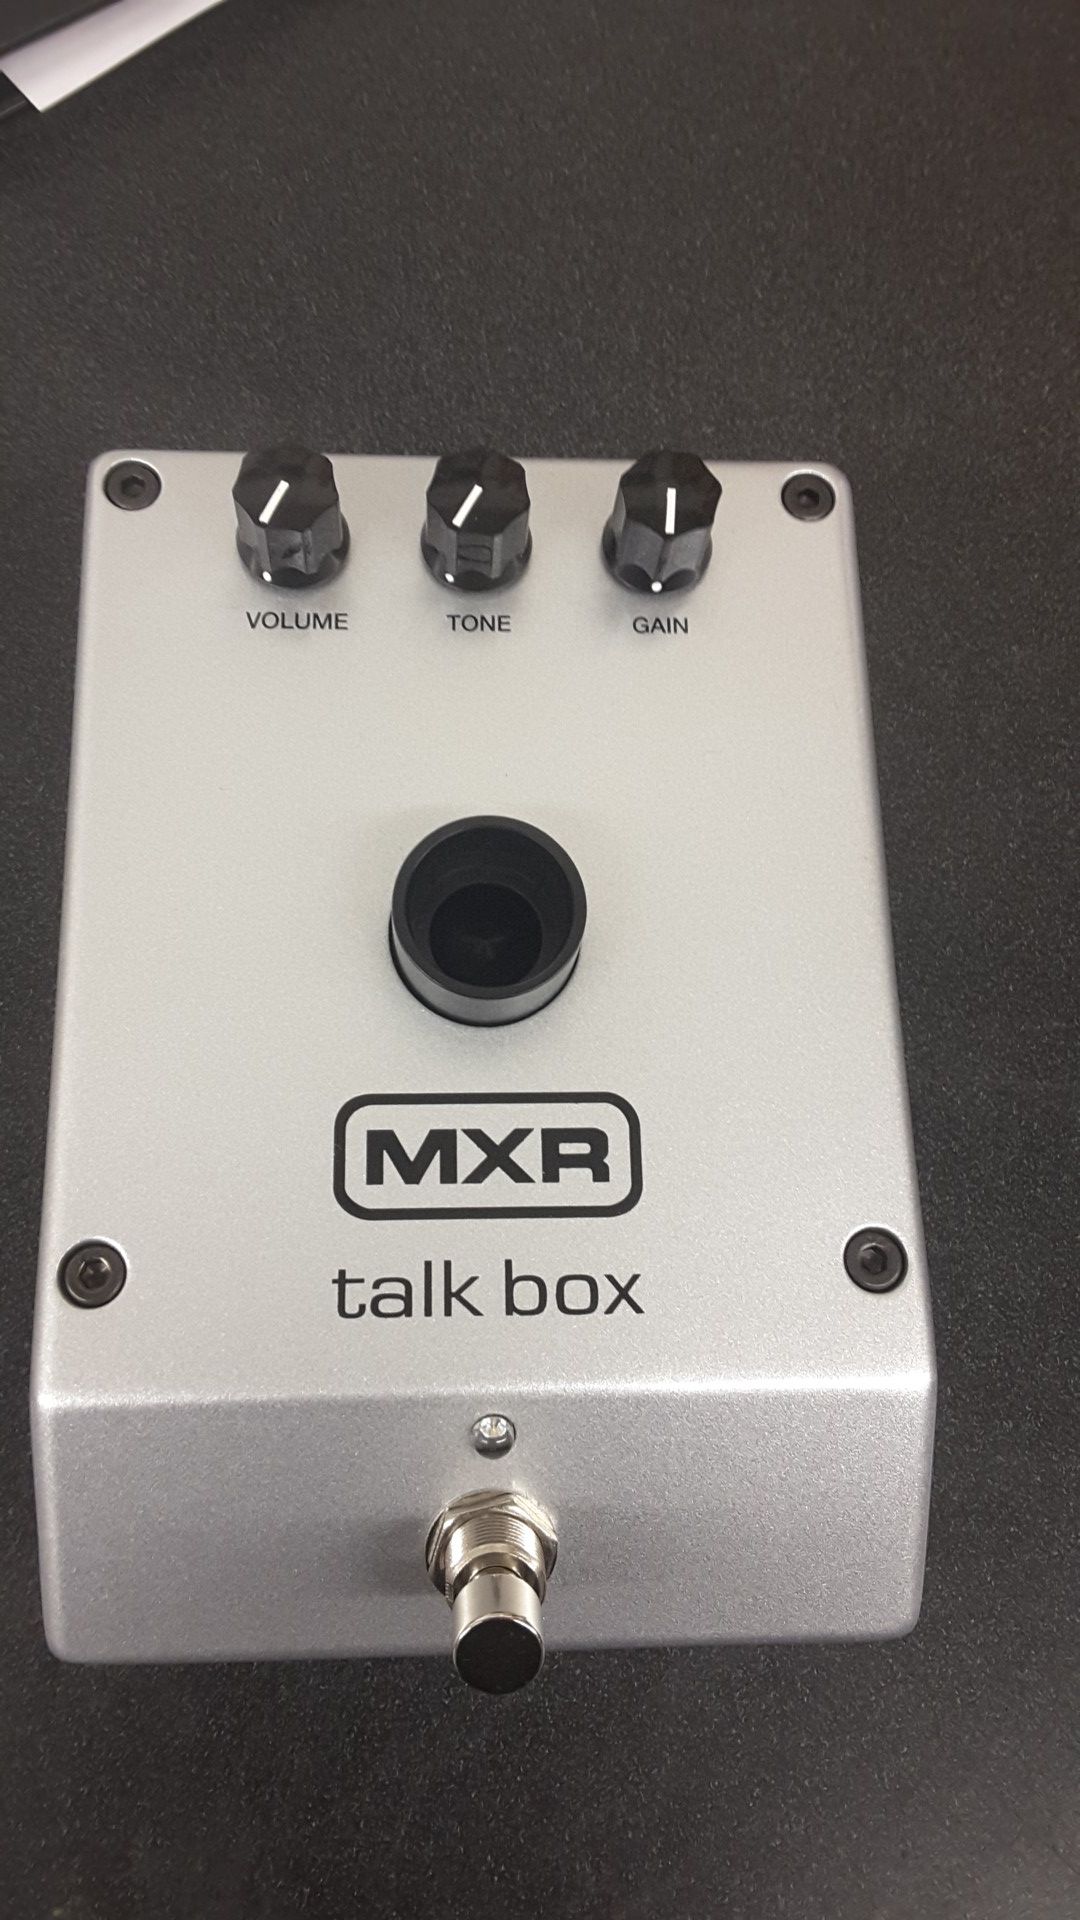 MXR talk box